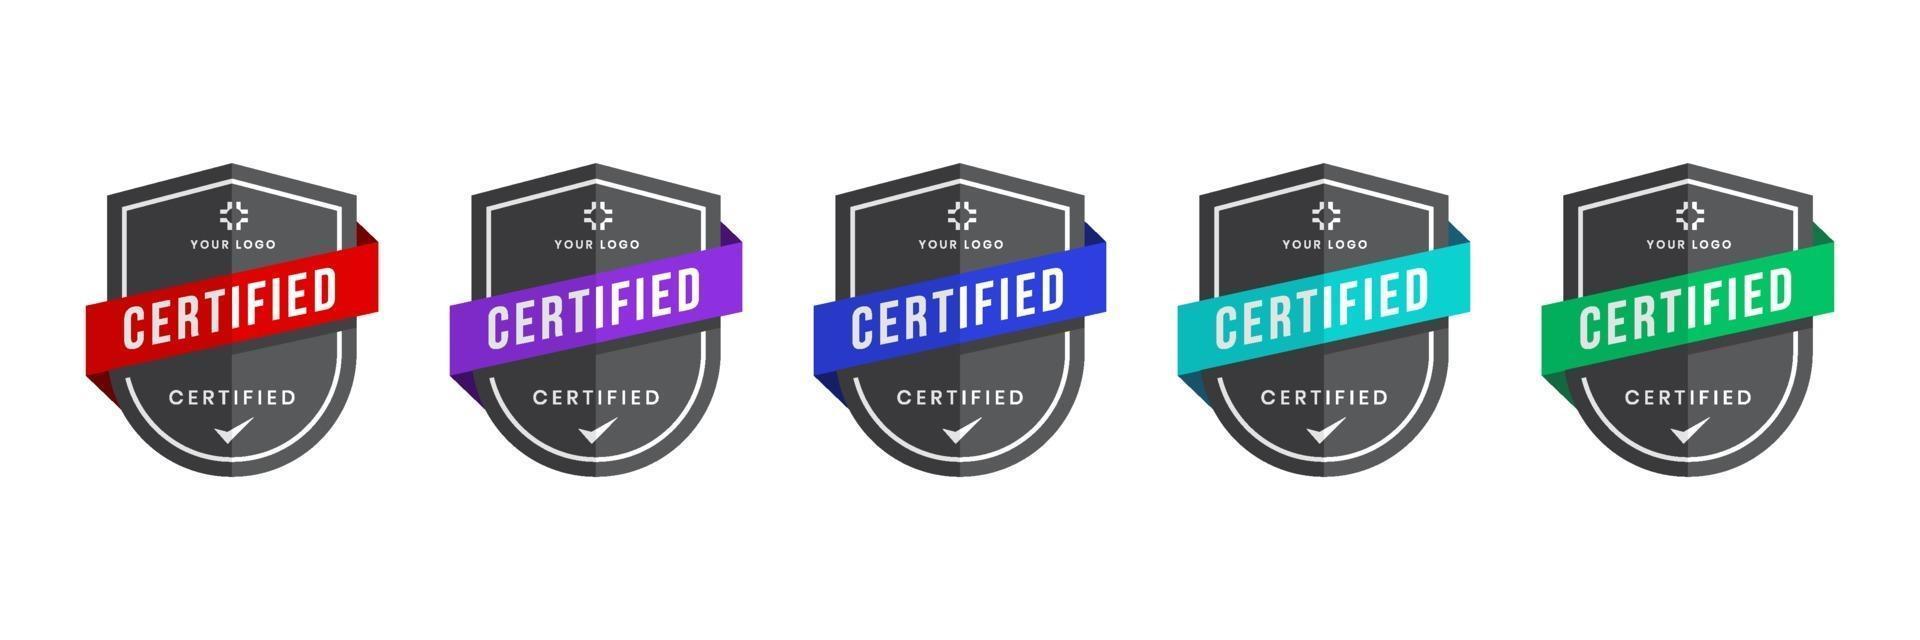 certifierat logomärke med sköldformvektor. digitala certifikat för kriterienivåer. vektor säkerhet ikon mall.